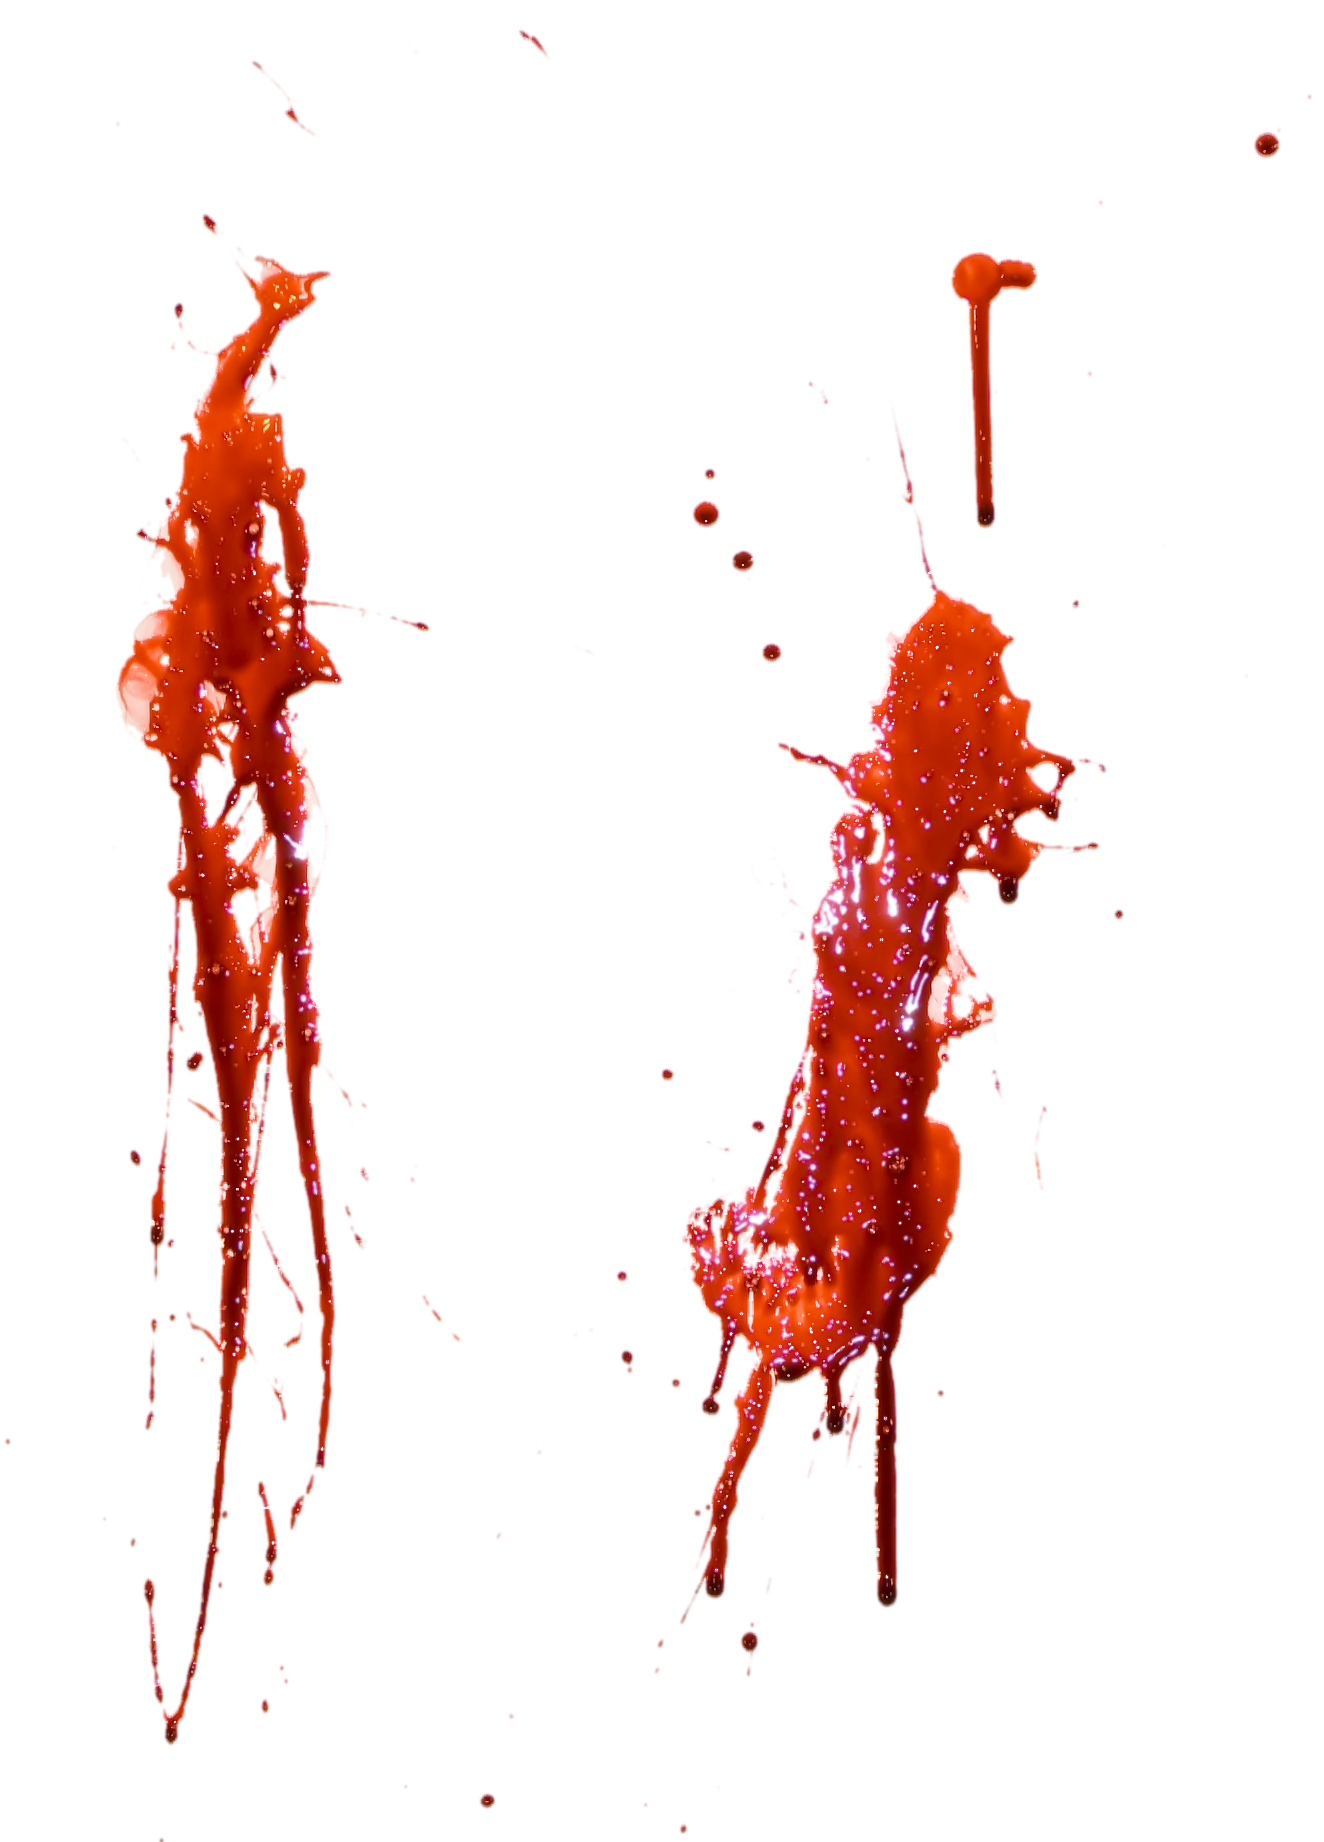 blood_splatter_texture_by_ien